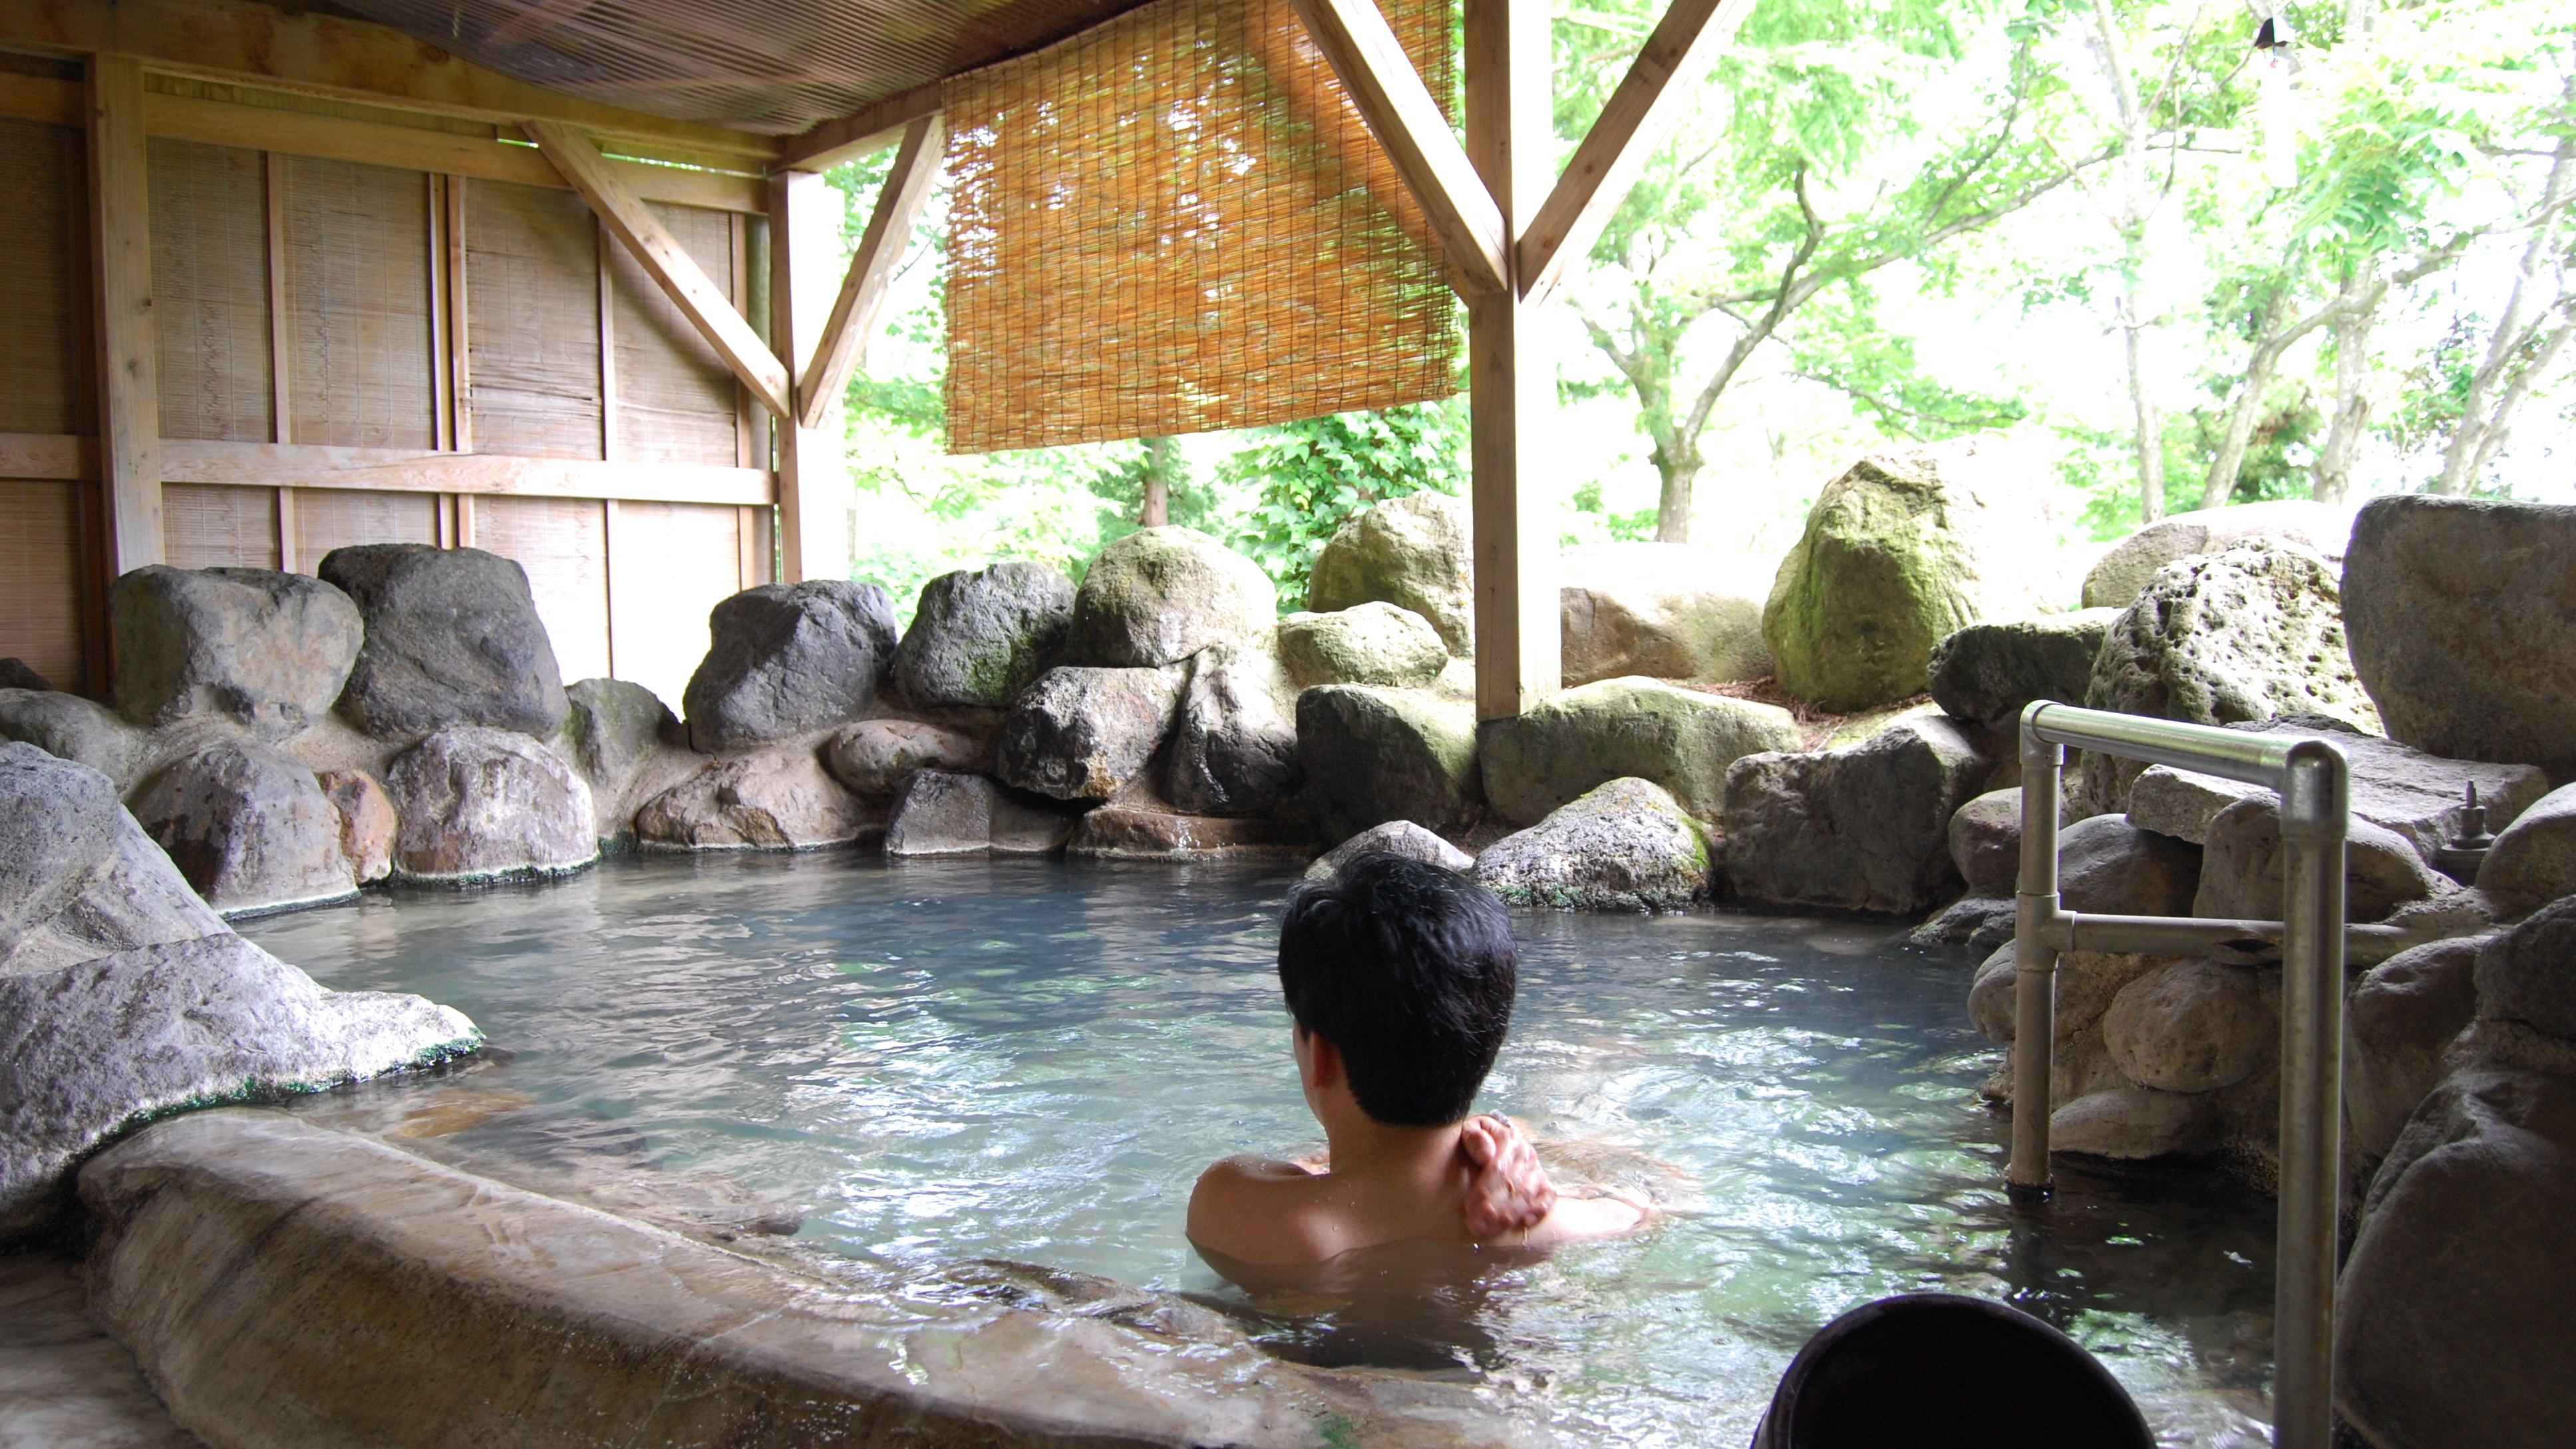  小さめの露天風呂だからこそ、静かな環境に溶け込めるように心を癒すことができます。